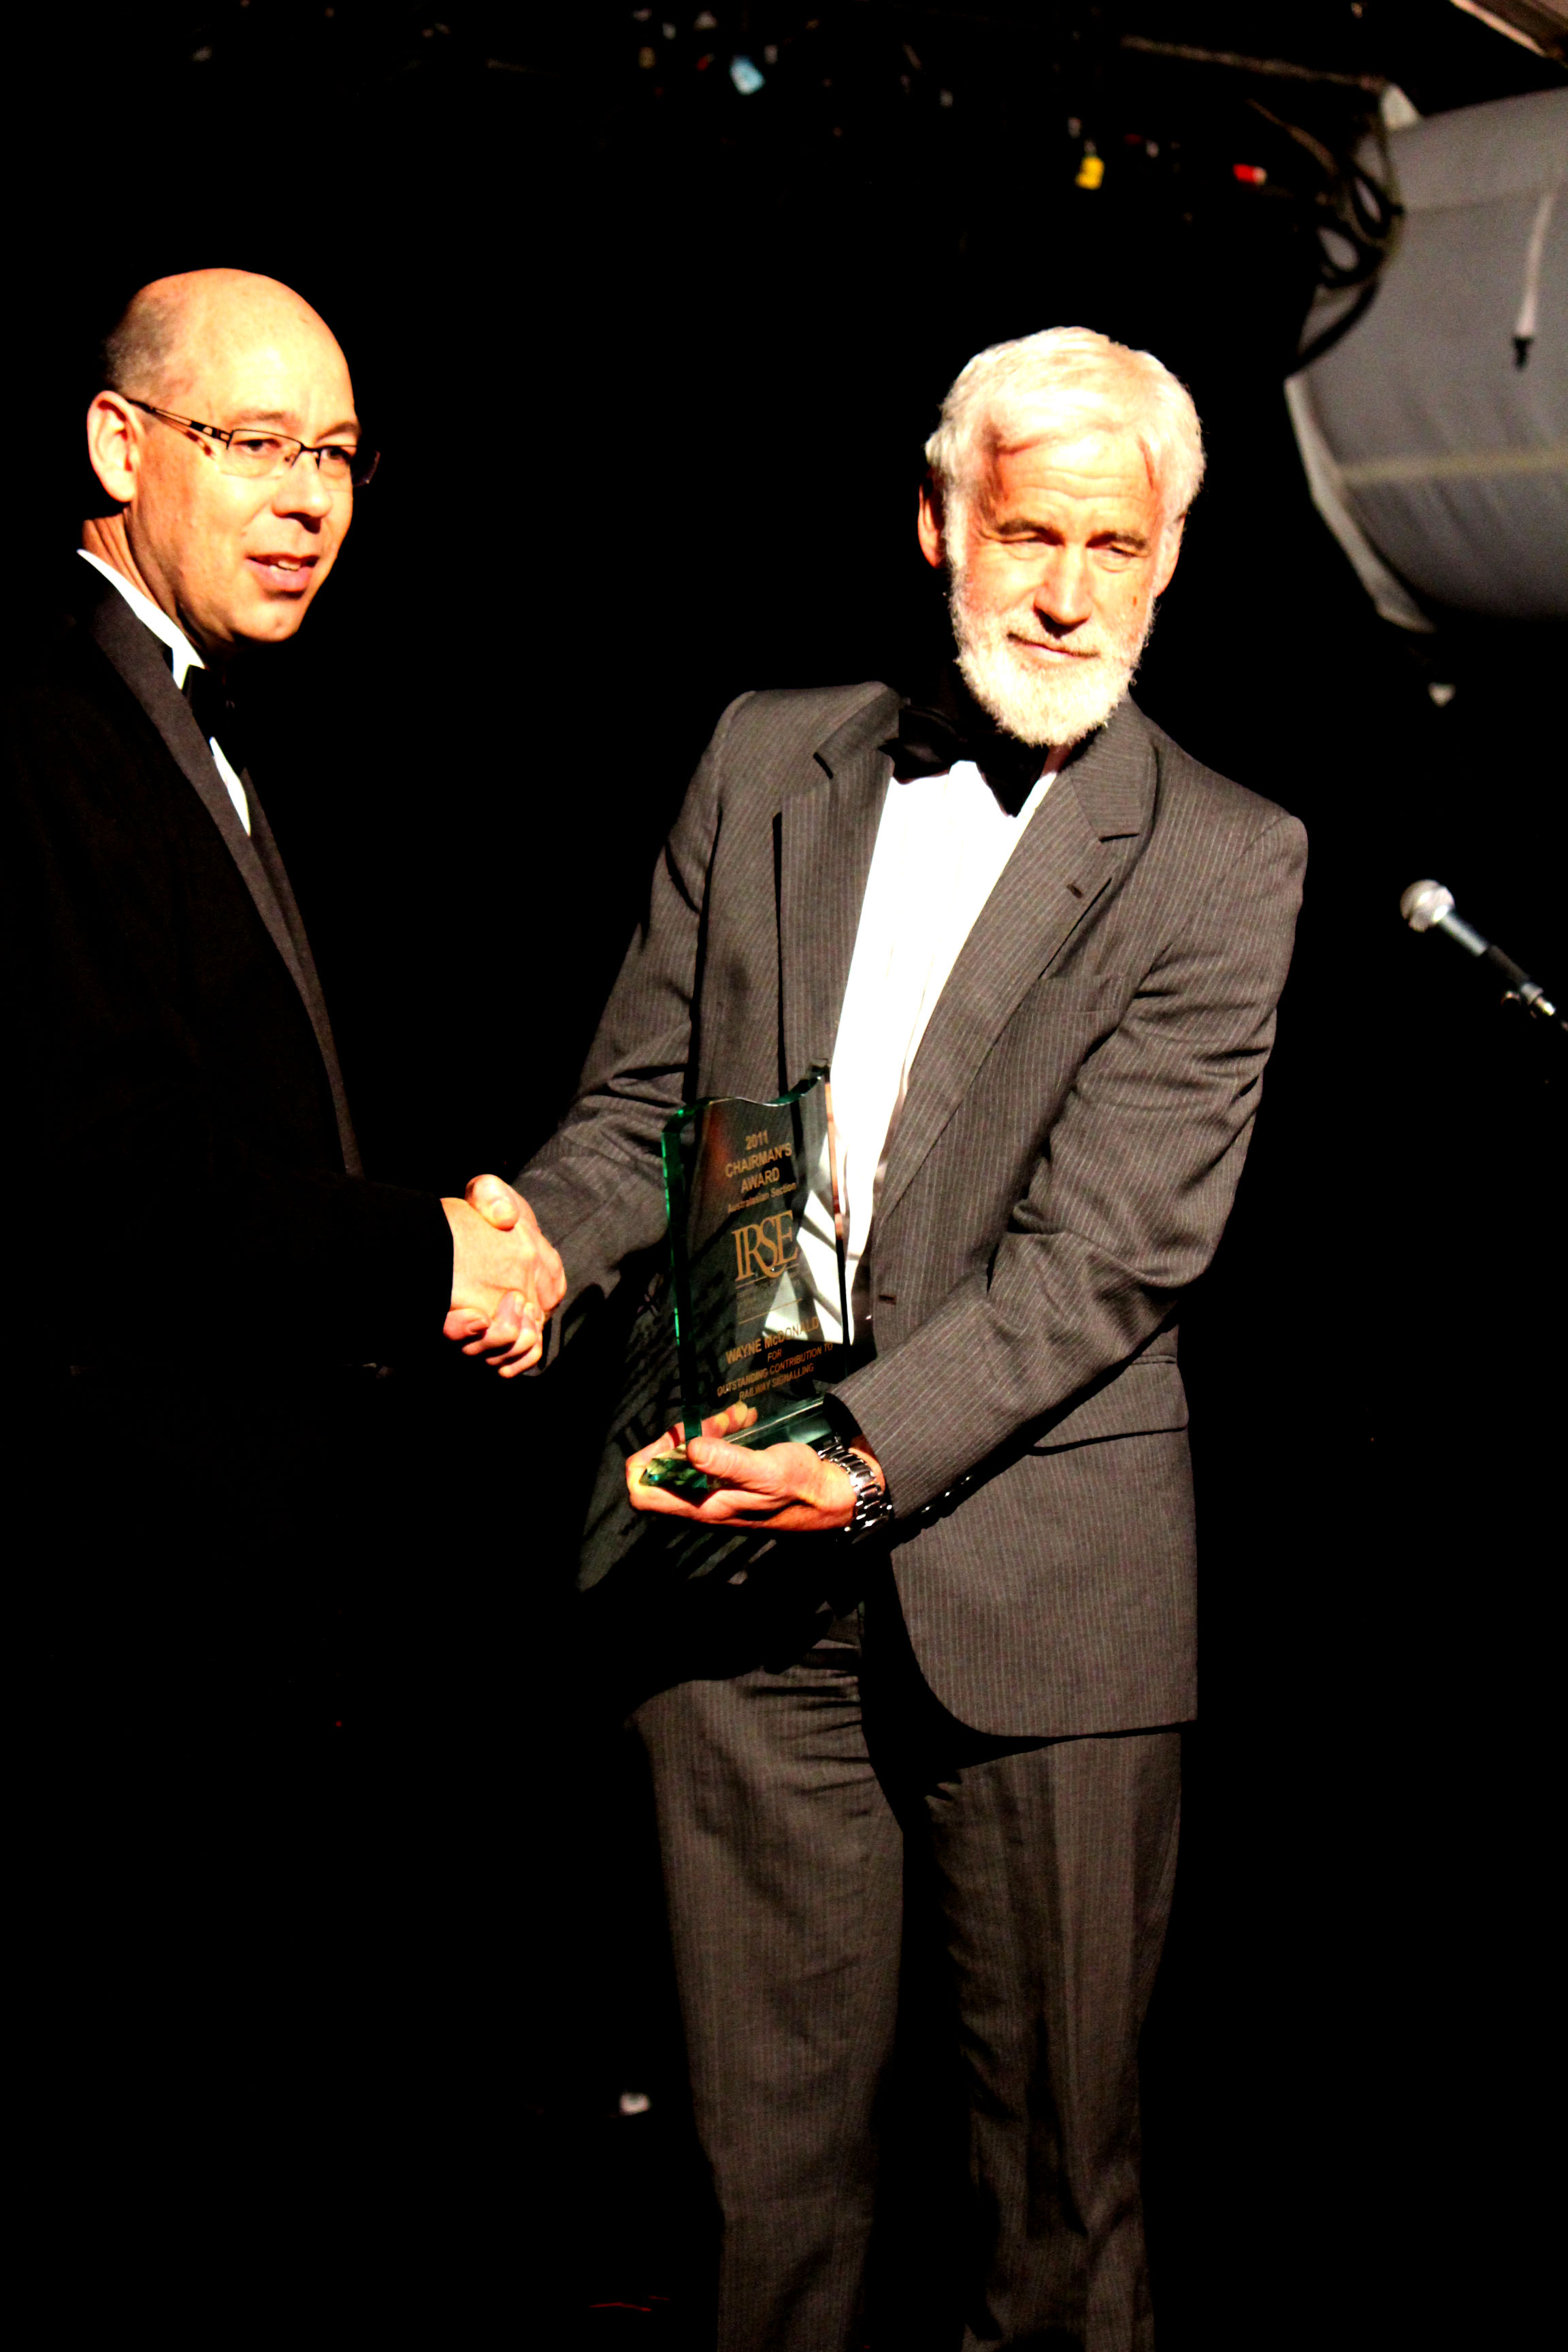 Wayne McDonald receives Chairman's Award